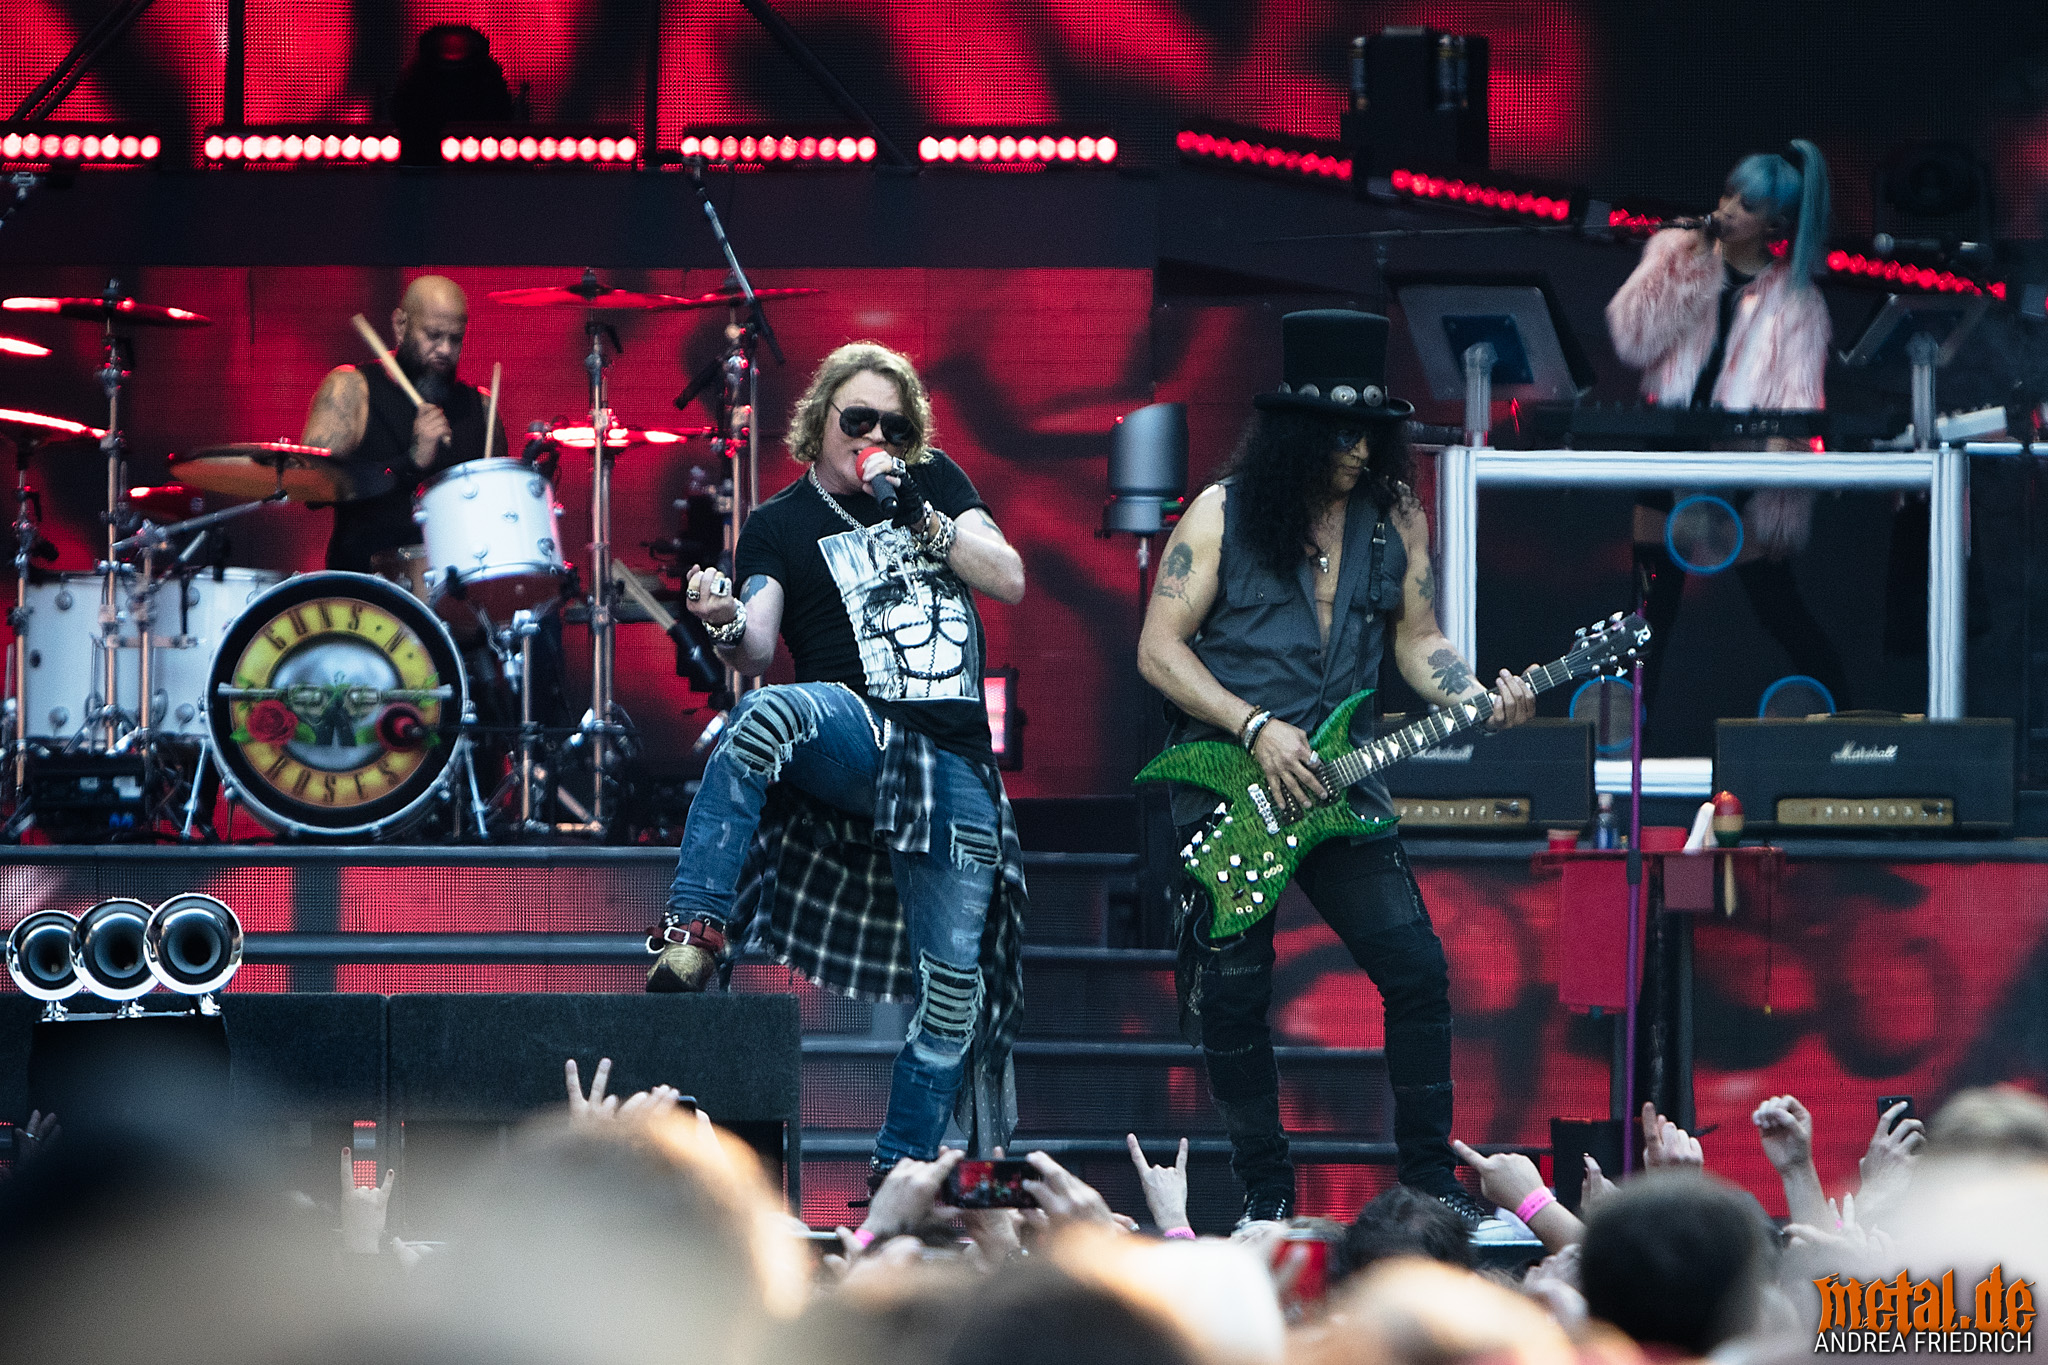 Konzertfoto von Axl Rose und Slash bei der Guns N' Roses - Not In This Lifetime Tour 2018